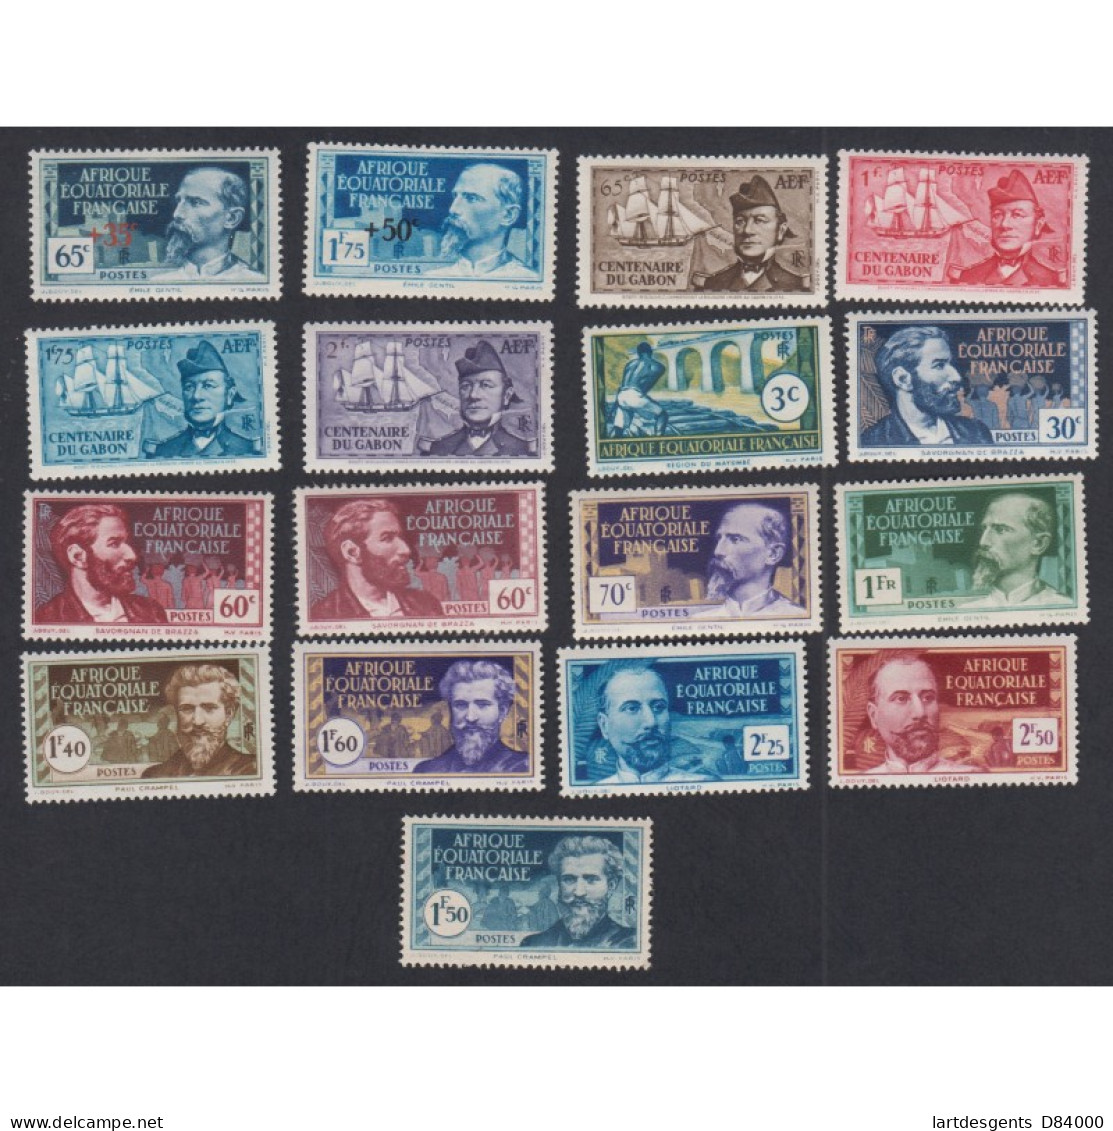 Colonies Série De 17 Timbres Avec Variétés AEF 1938-40, N°64 à 86 Neufs* Lartdesgents - Lettres & Documents